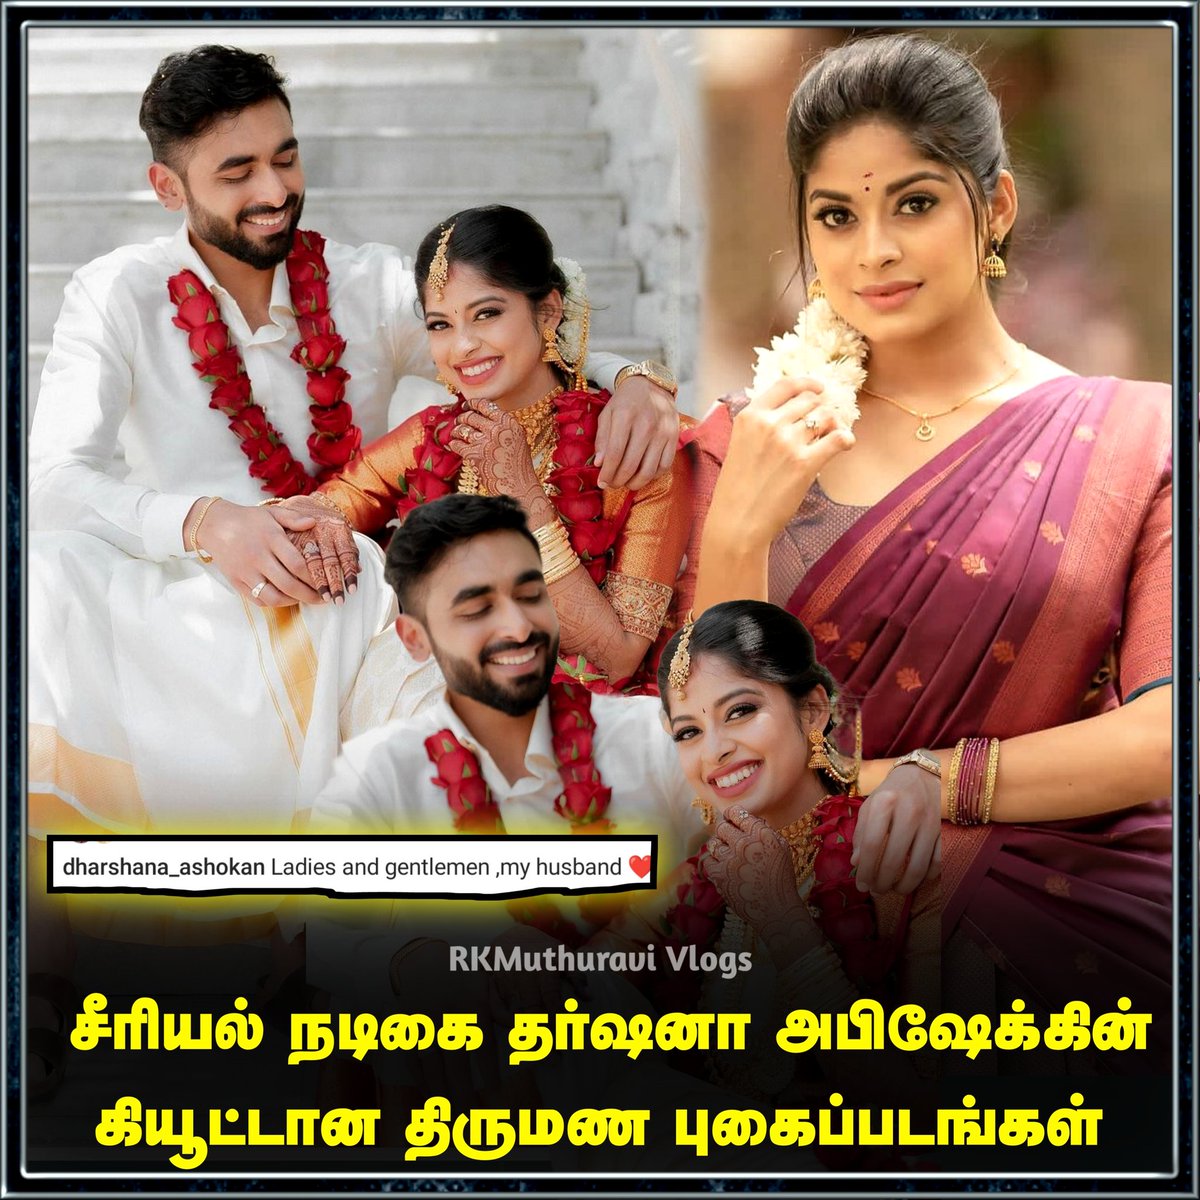 சீரியல் நடிகை தர்ஷனா அபிஷேக்கின் கியூட்டான திருமண புகைப்படங்கள் 

#DharshanaAshokan #serialactress #abhishek #marriage #weddingday #trendingnow #LatestNews